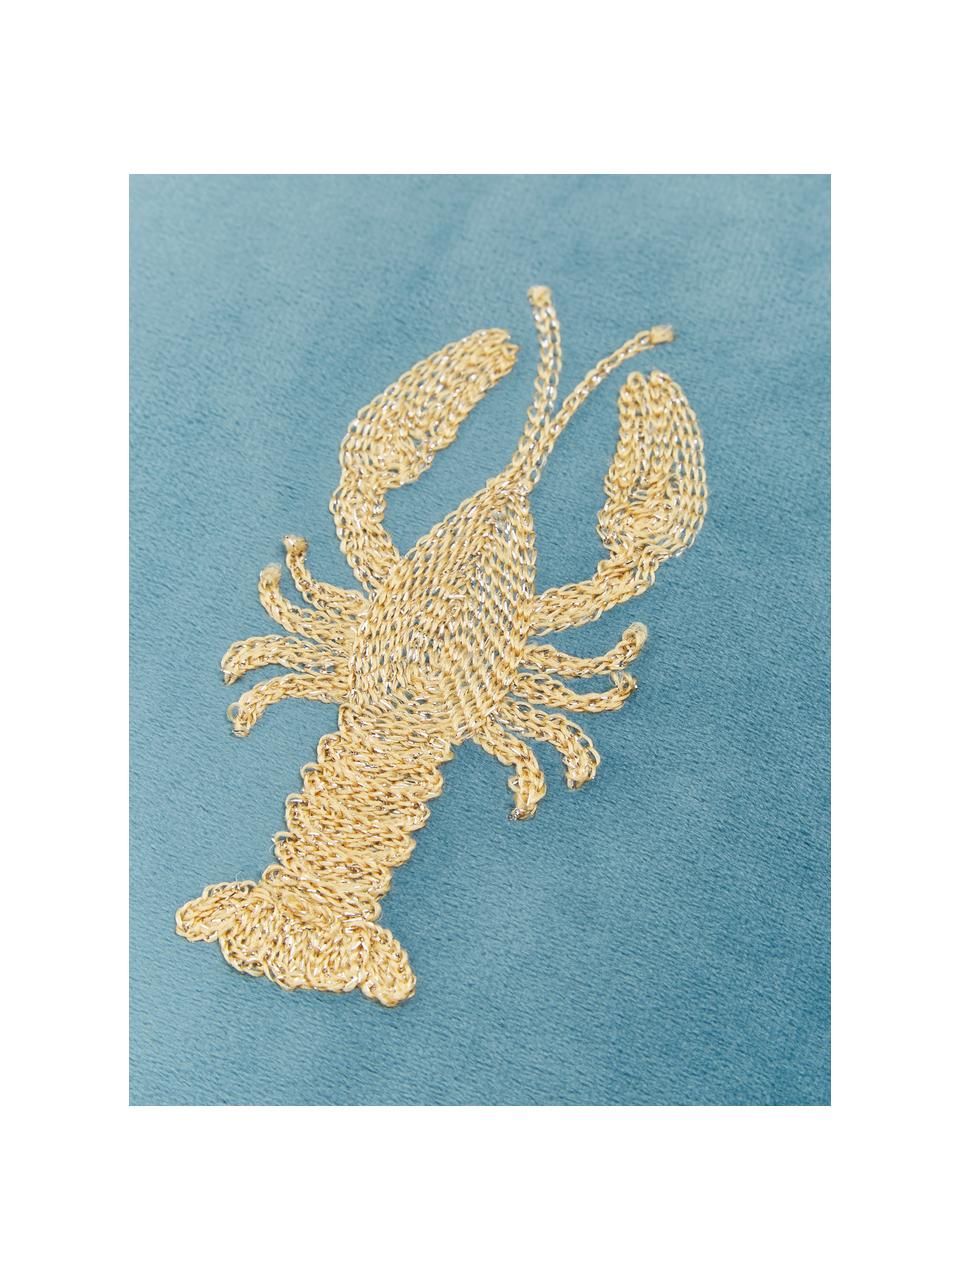 Cuscino in velluto ricamato Lobster, 100% velluto

Si prega di tenere presente che il velluto apparirà di colore più chiaro o più scuro a seconda dell'incidenza della luce e del verso del tessuto, Blu, dorato, Larg. 45 x Lung. 45 cm